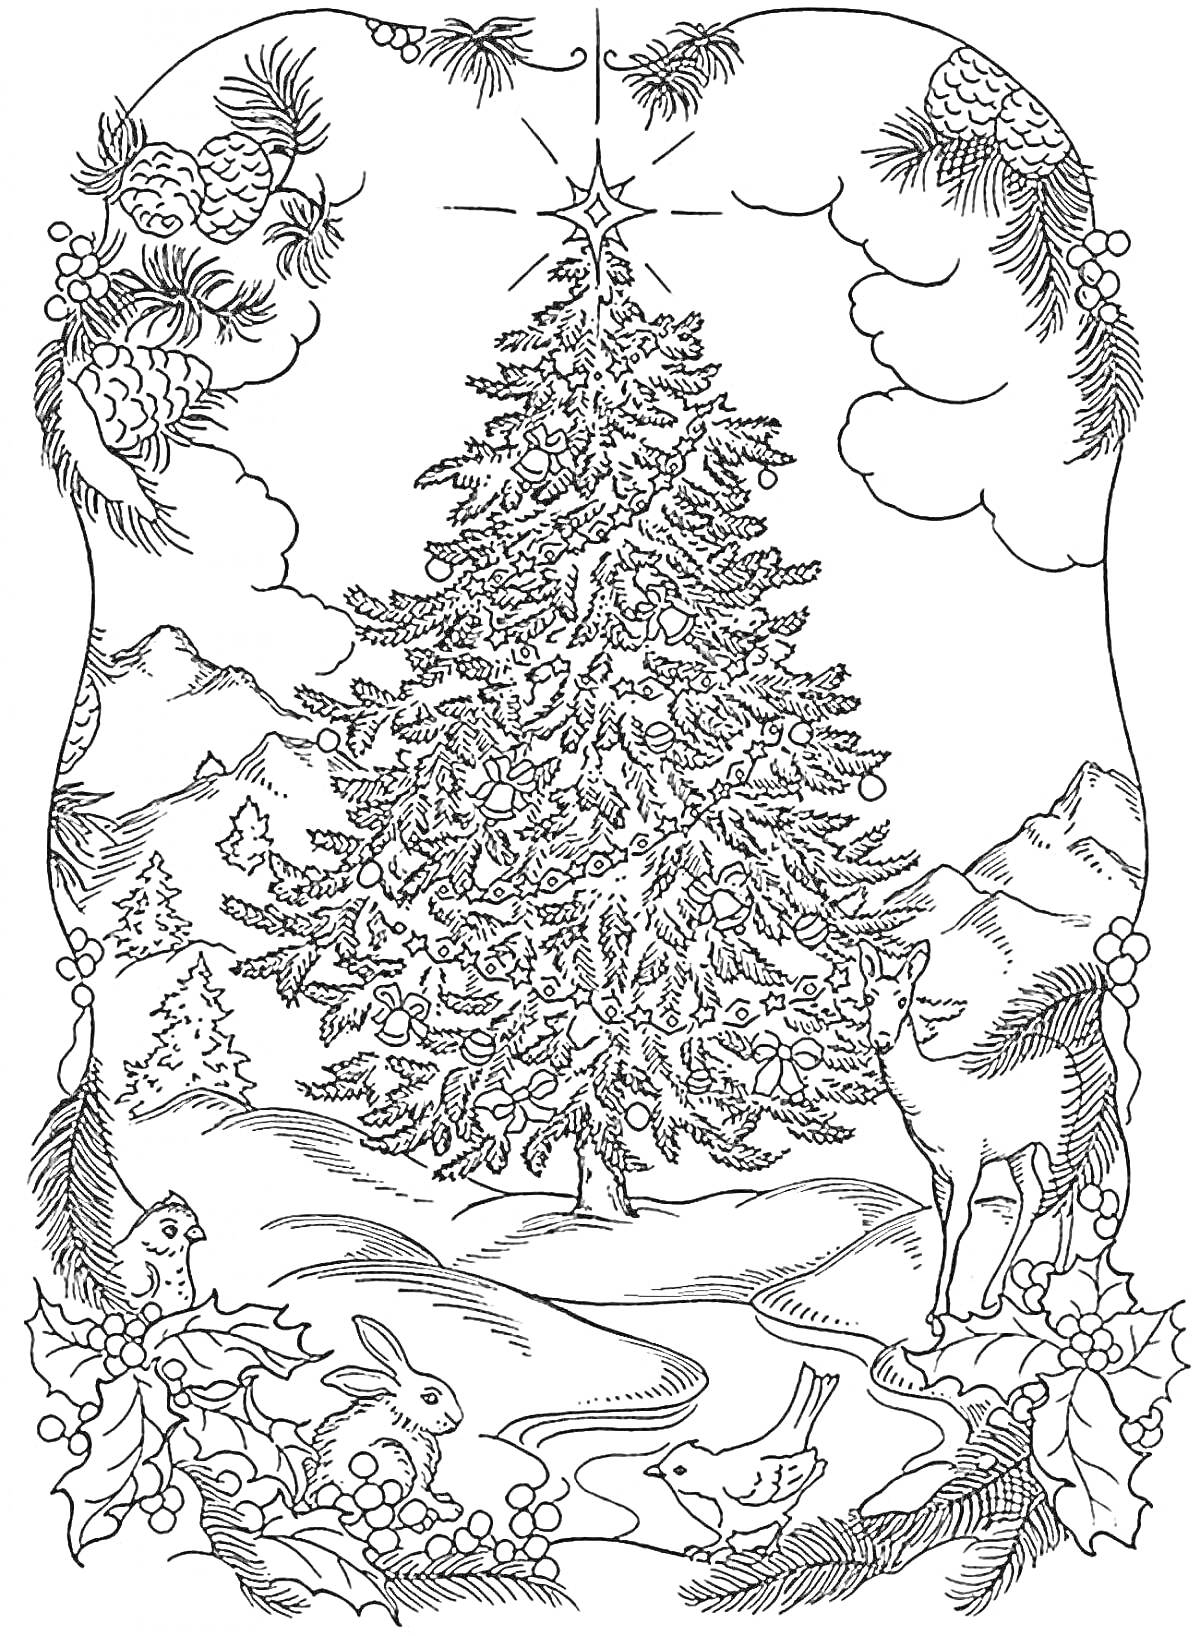 Раскраска Ёлка с украшениями, оленем, зайцами, птицами и горным пейзажем на фоне, окружённая ветками и шишками